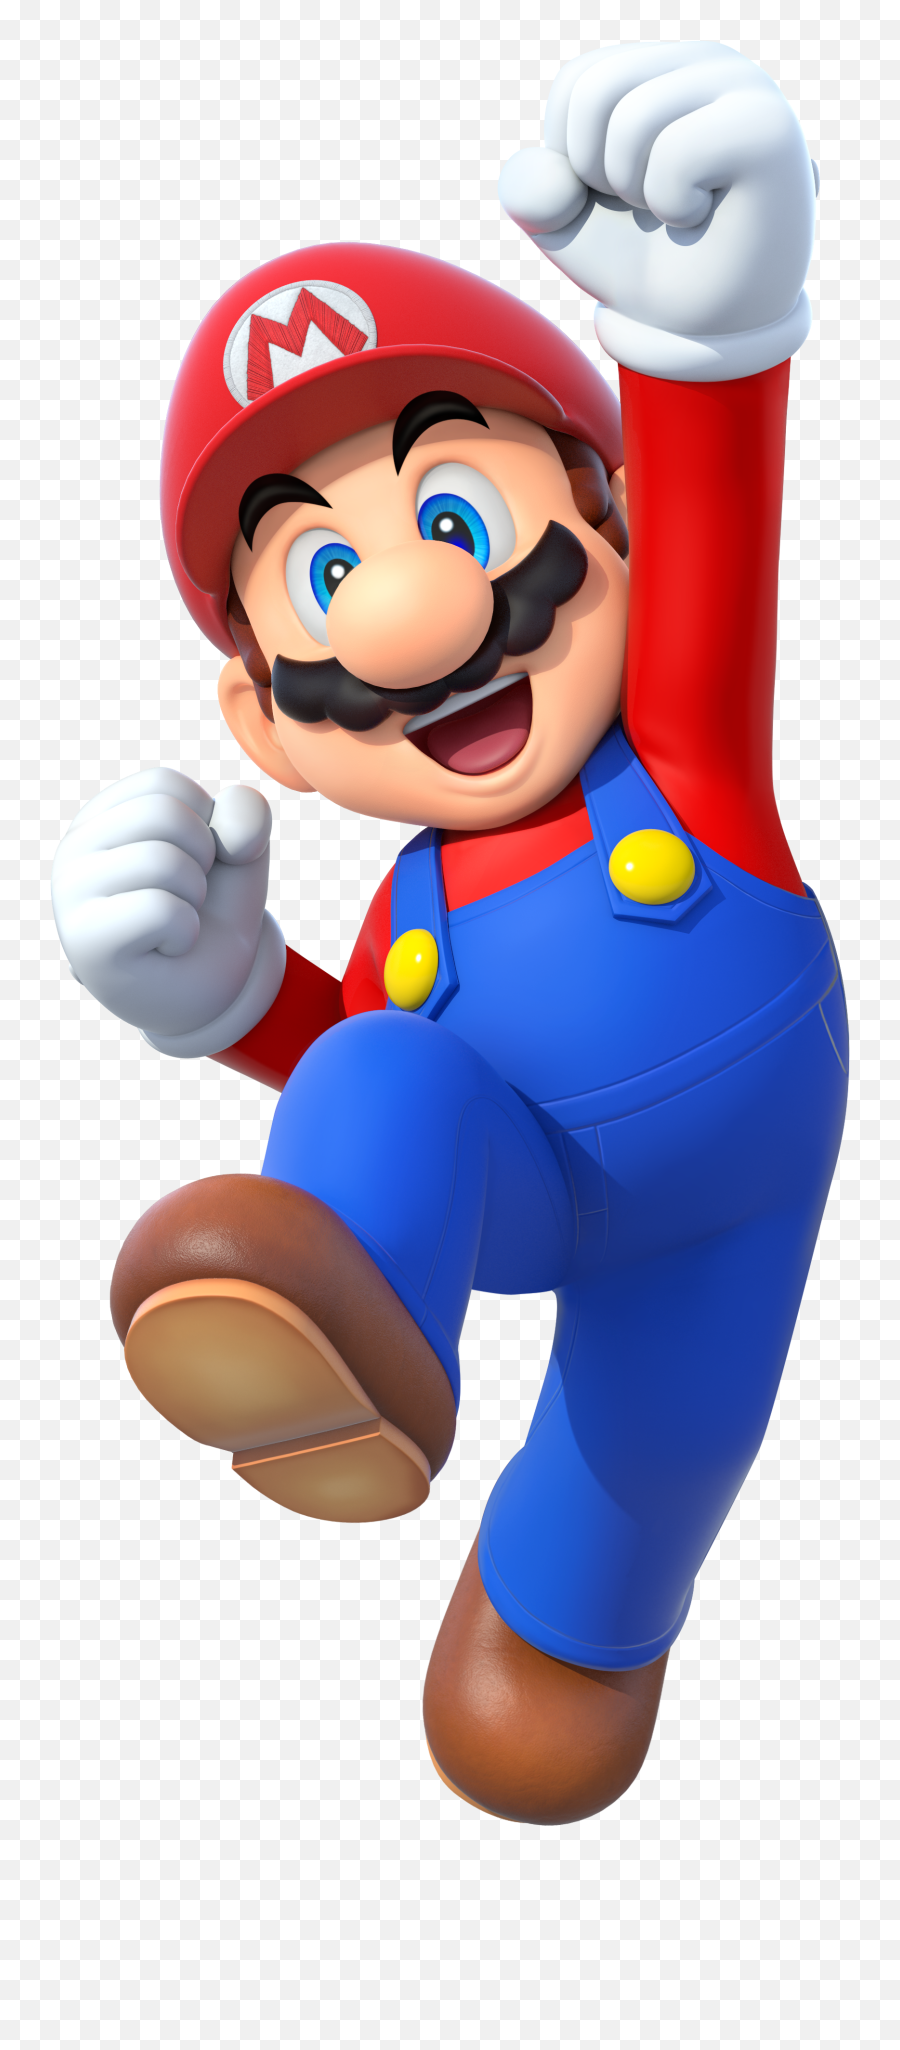 Mario Png - Mario Mario Party 10,Mario Party Png